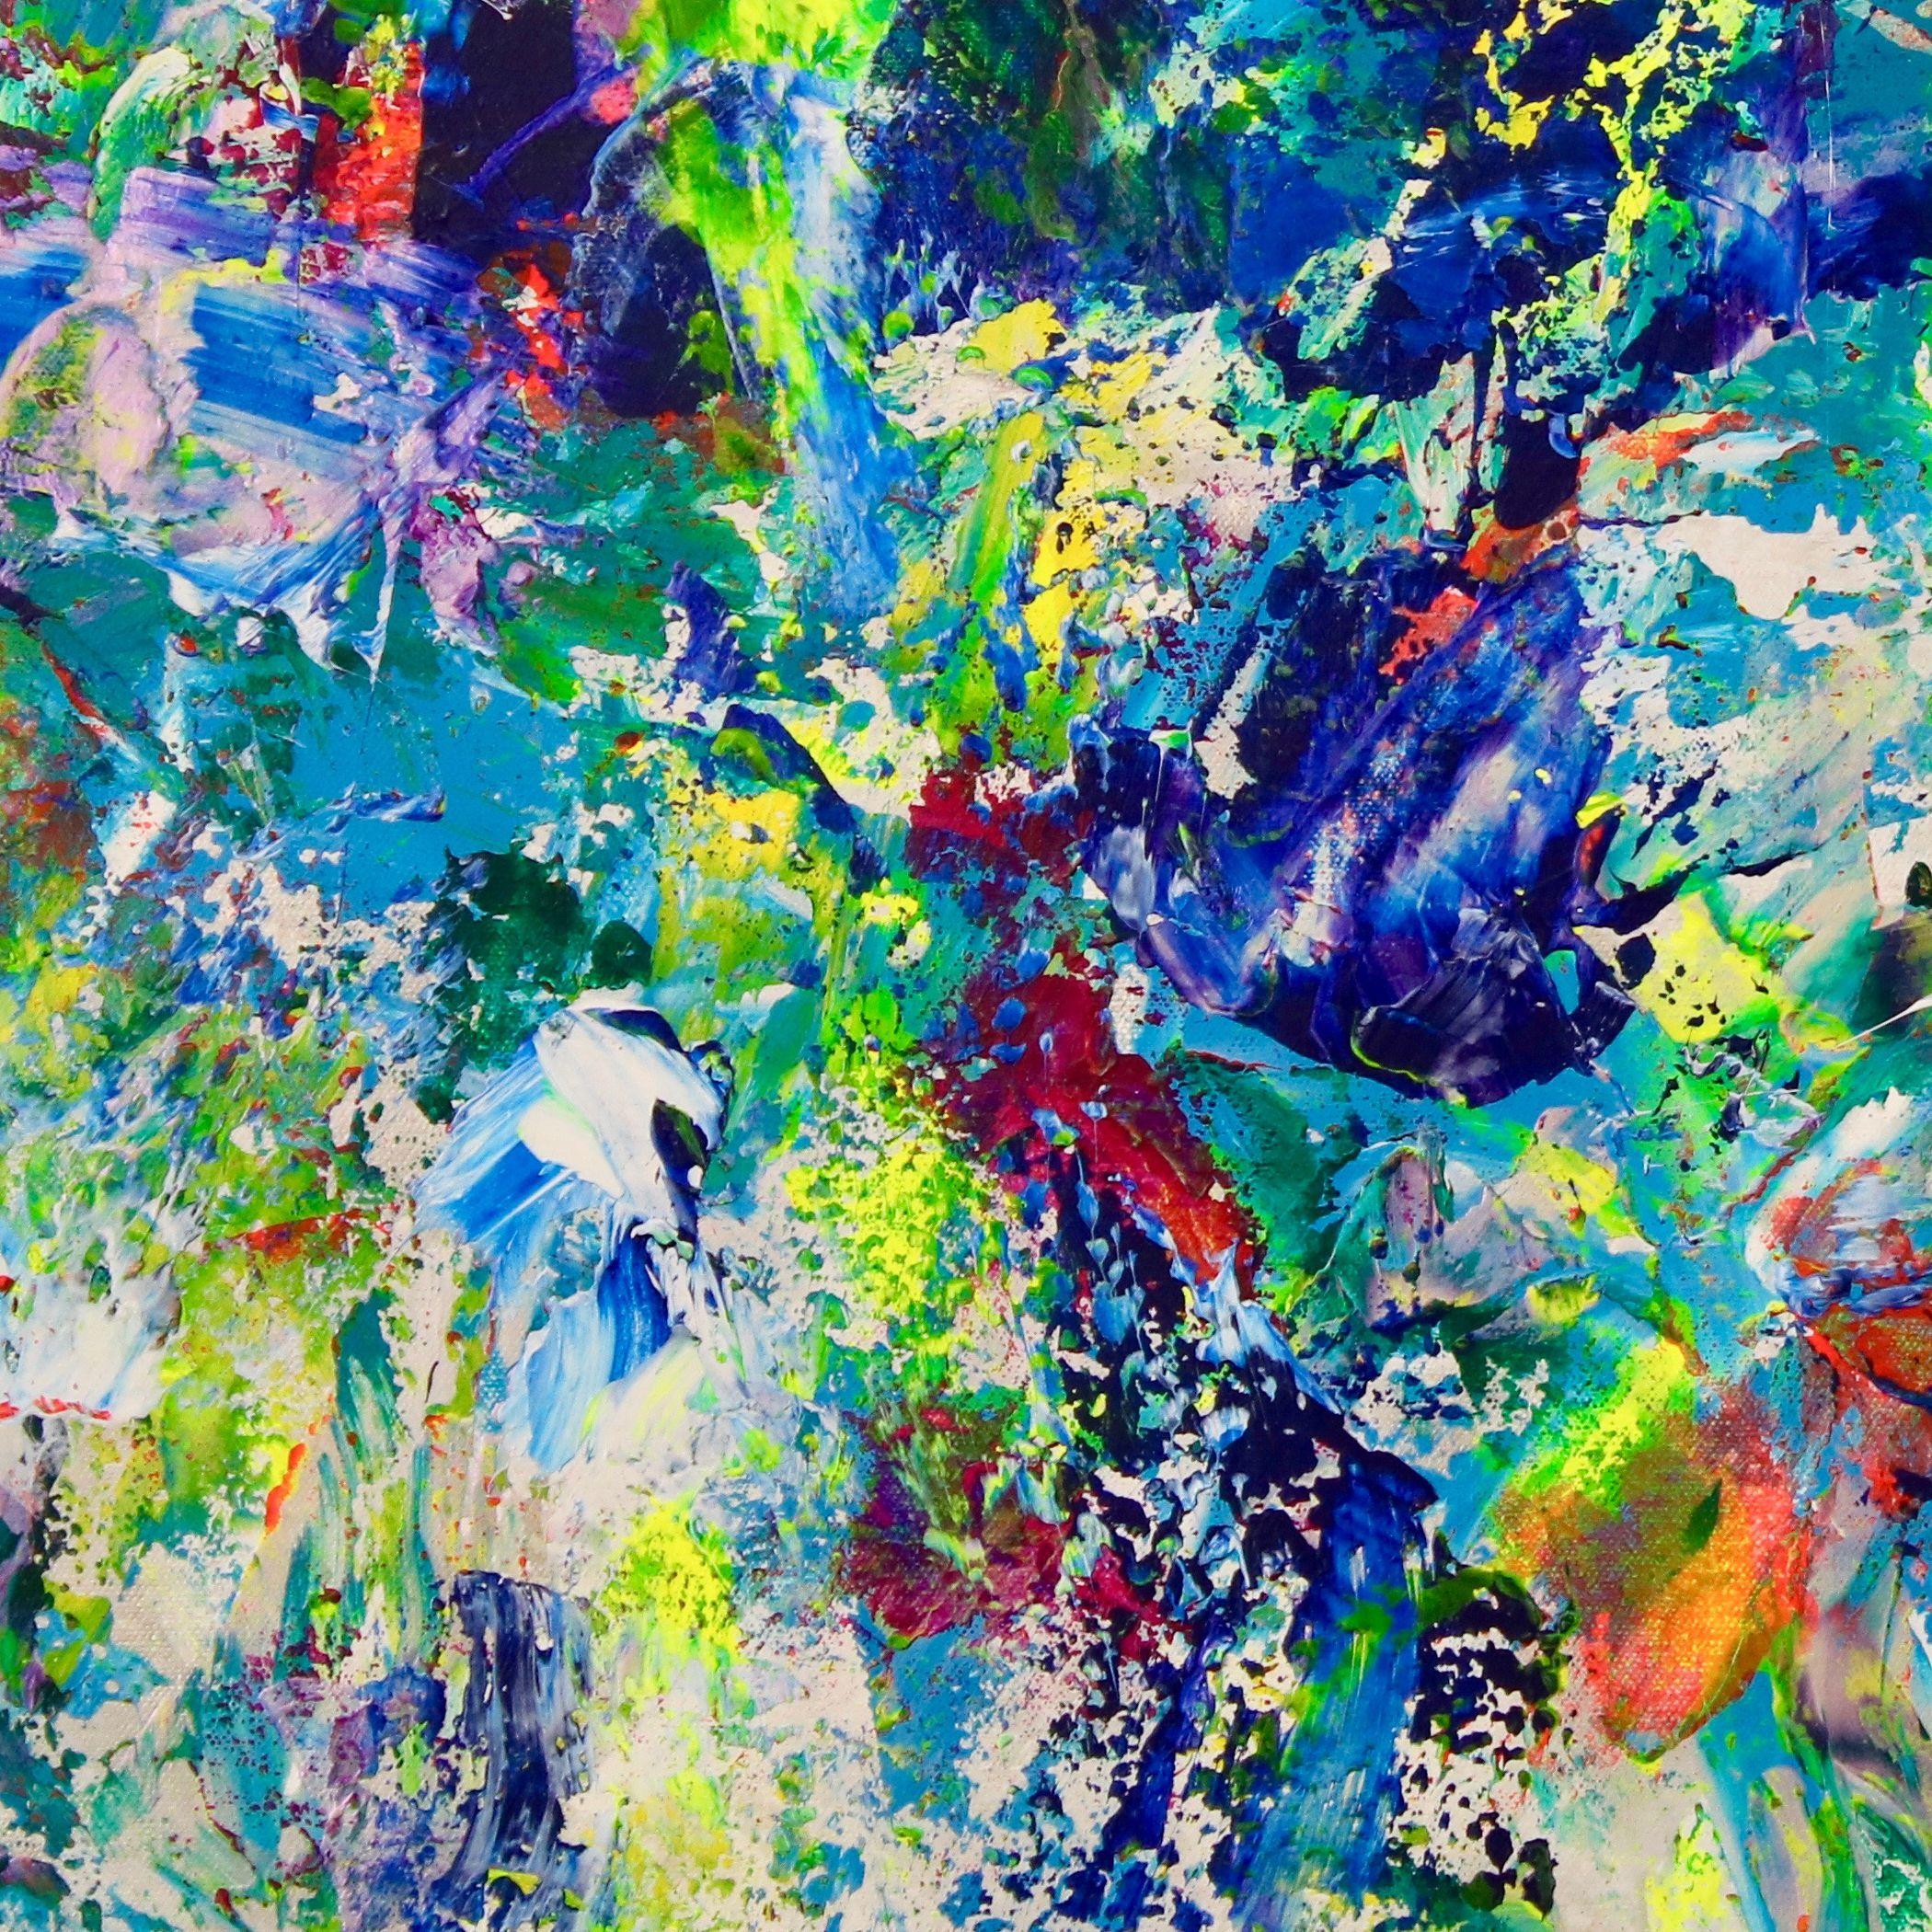 Eindrucksvolle, kräftige, abstrakte Blautöne kontrastieren mit Grün, Silber, irisierendem Grün, Lila und Blau sowie Gelb mit Schattierungen von Magenta, Orange und Rosa. Eine wahre Explosion von Farben, Formen und Texturen.    Dieses Gemälde wird